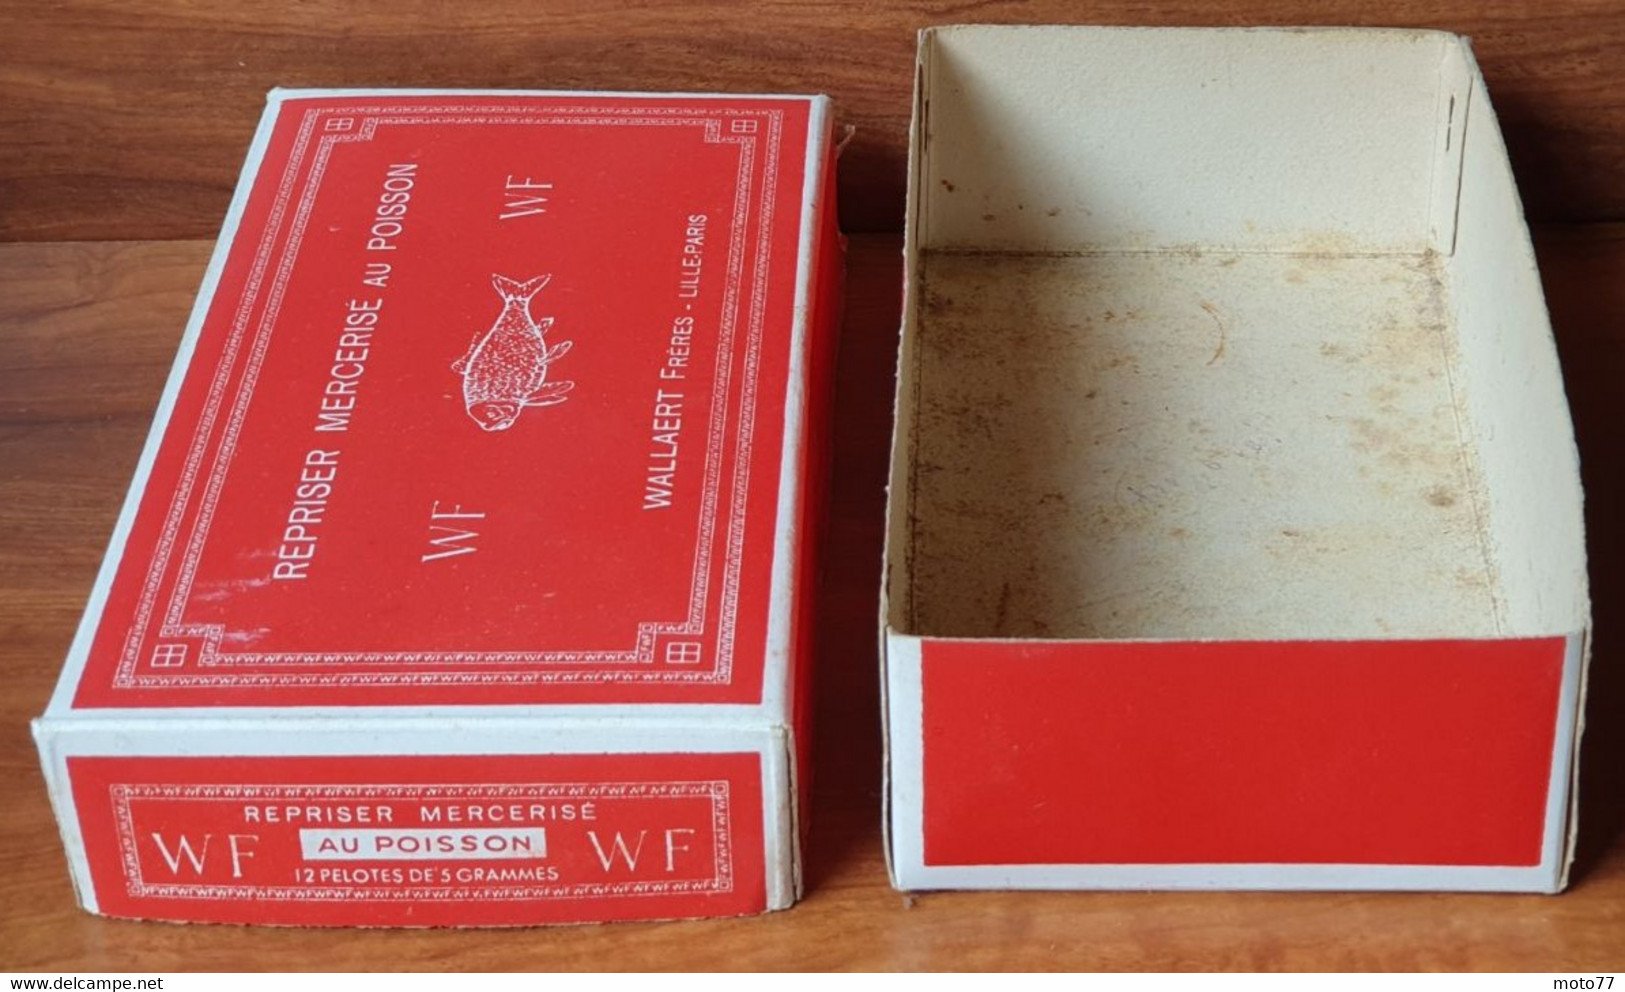 Ancienne boite carton - Publicité Mercerie WF au POISSON - Etiquette pelotes MARRON - Etiquette GOULET TURPIN vers 1950